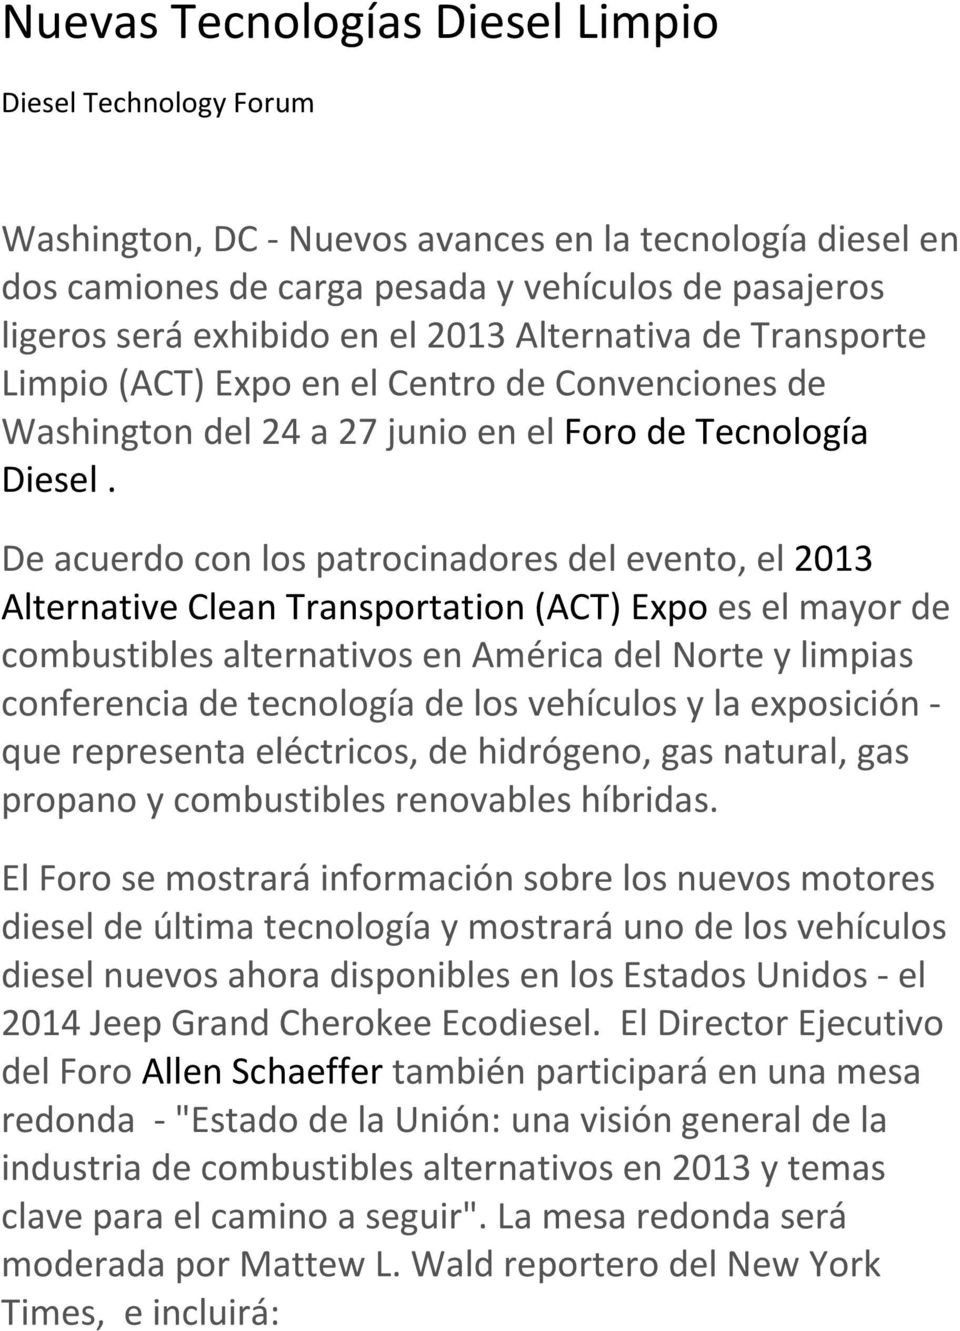 De acuerdo con los patrocinadores del evento, el 2013 Alternative Clean Transportation (ACT) Expo es el mayor de combustibles alternativos en América del Norte y limpias conferencia de tecnología de